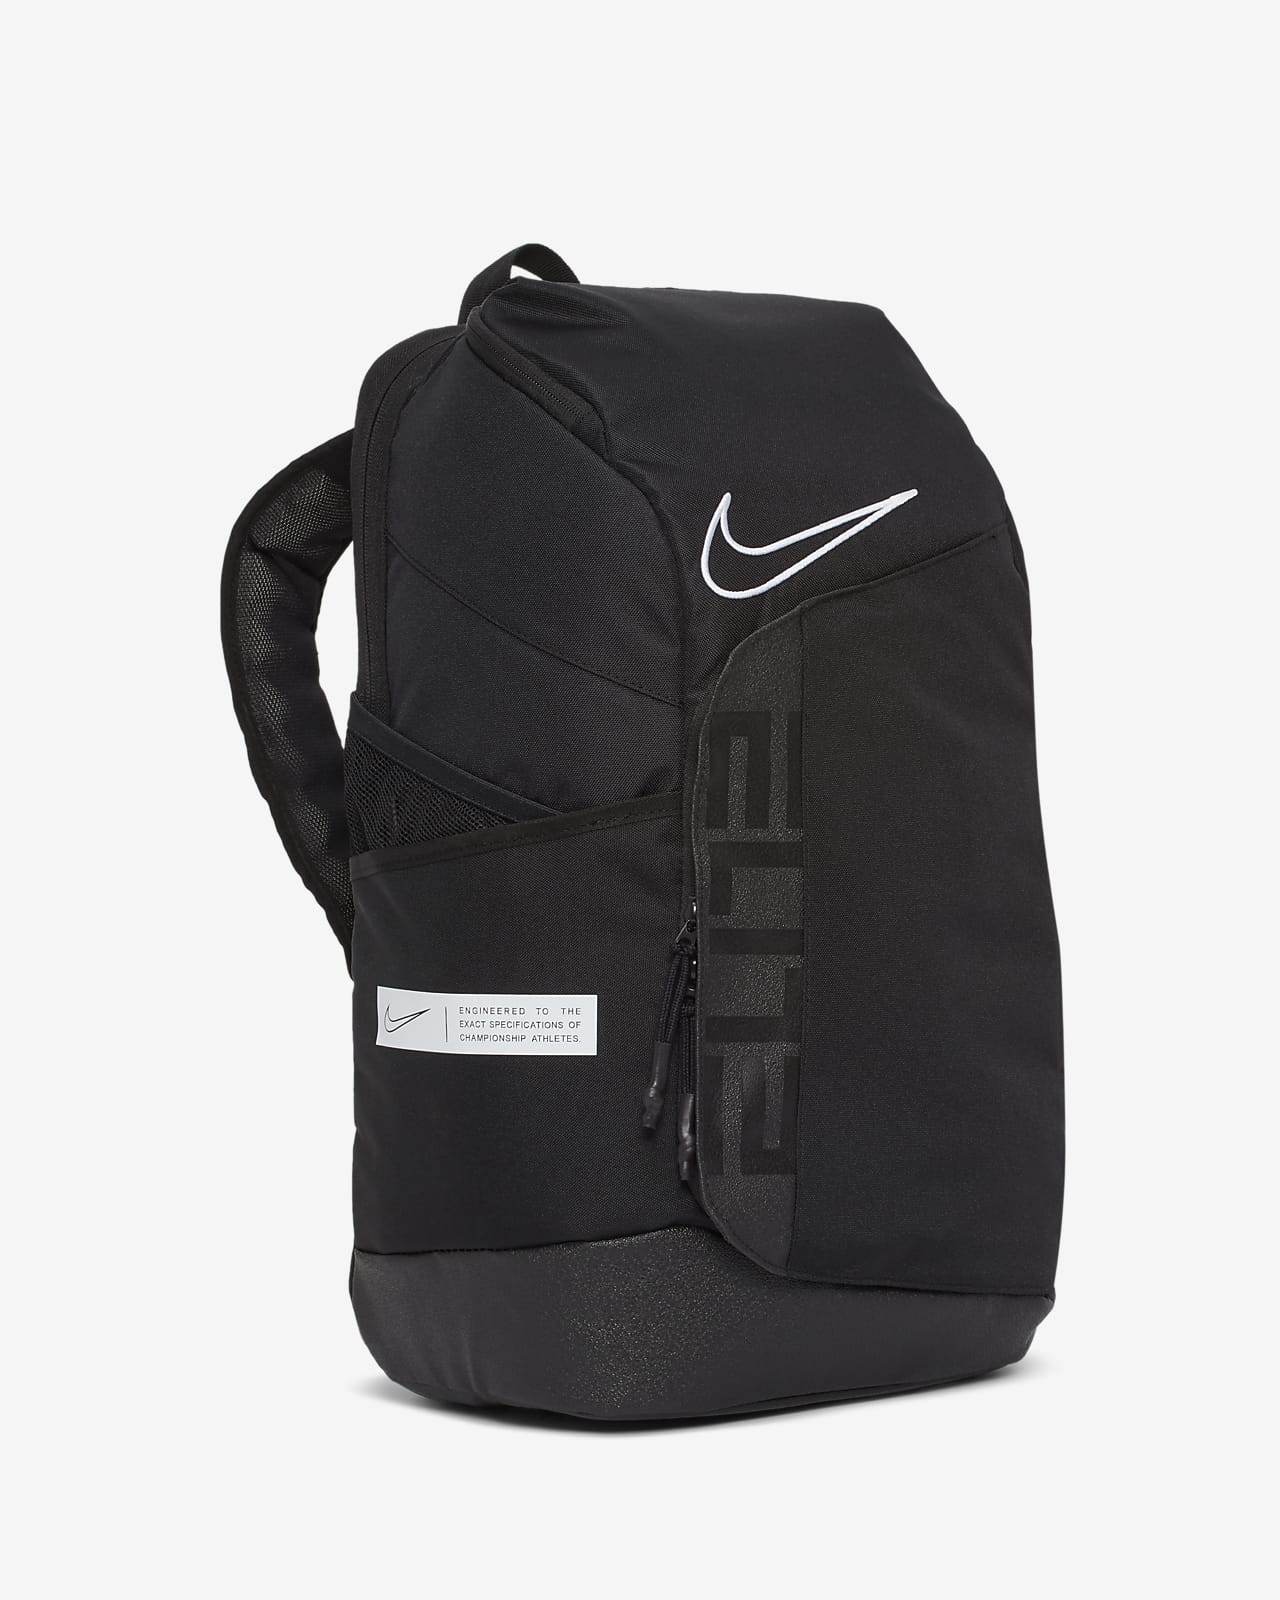 nike elite backpack near me